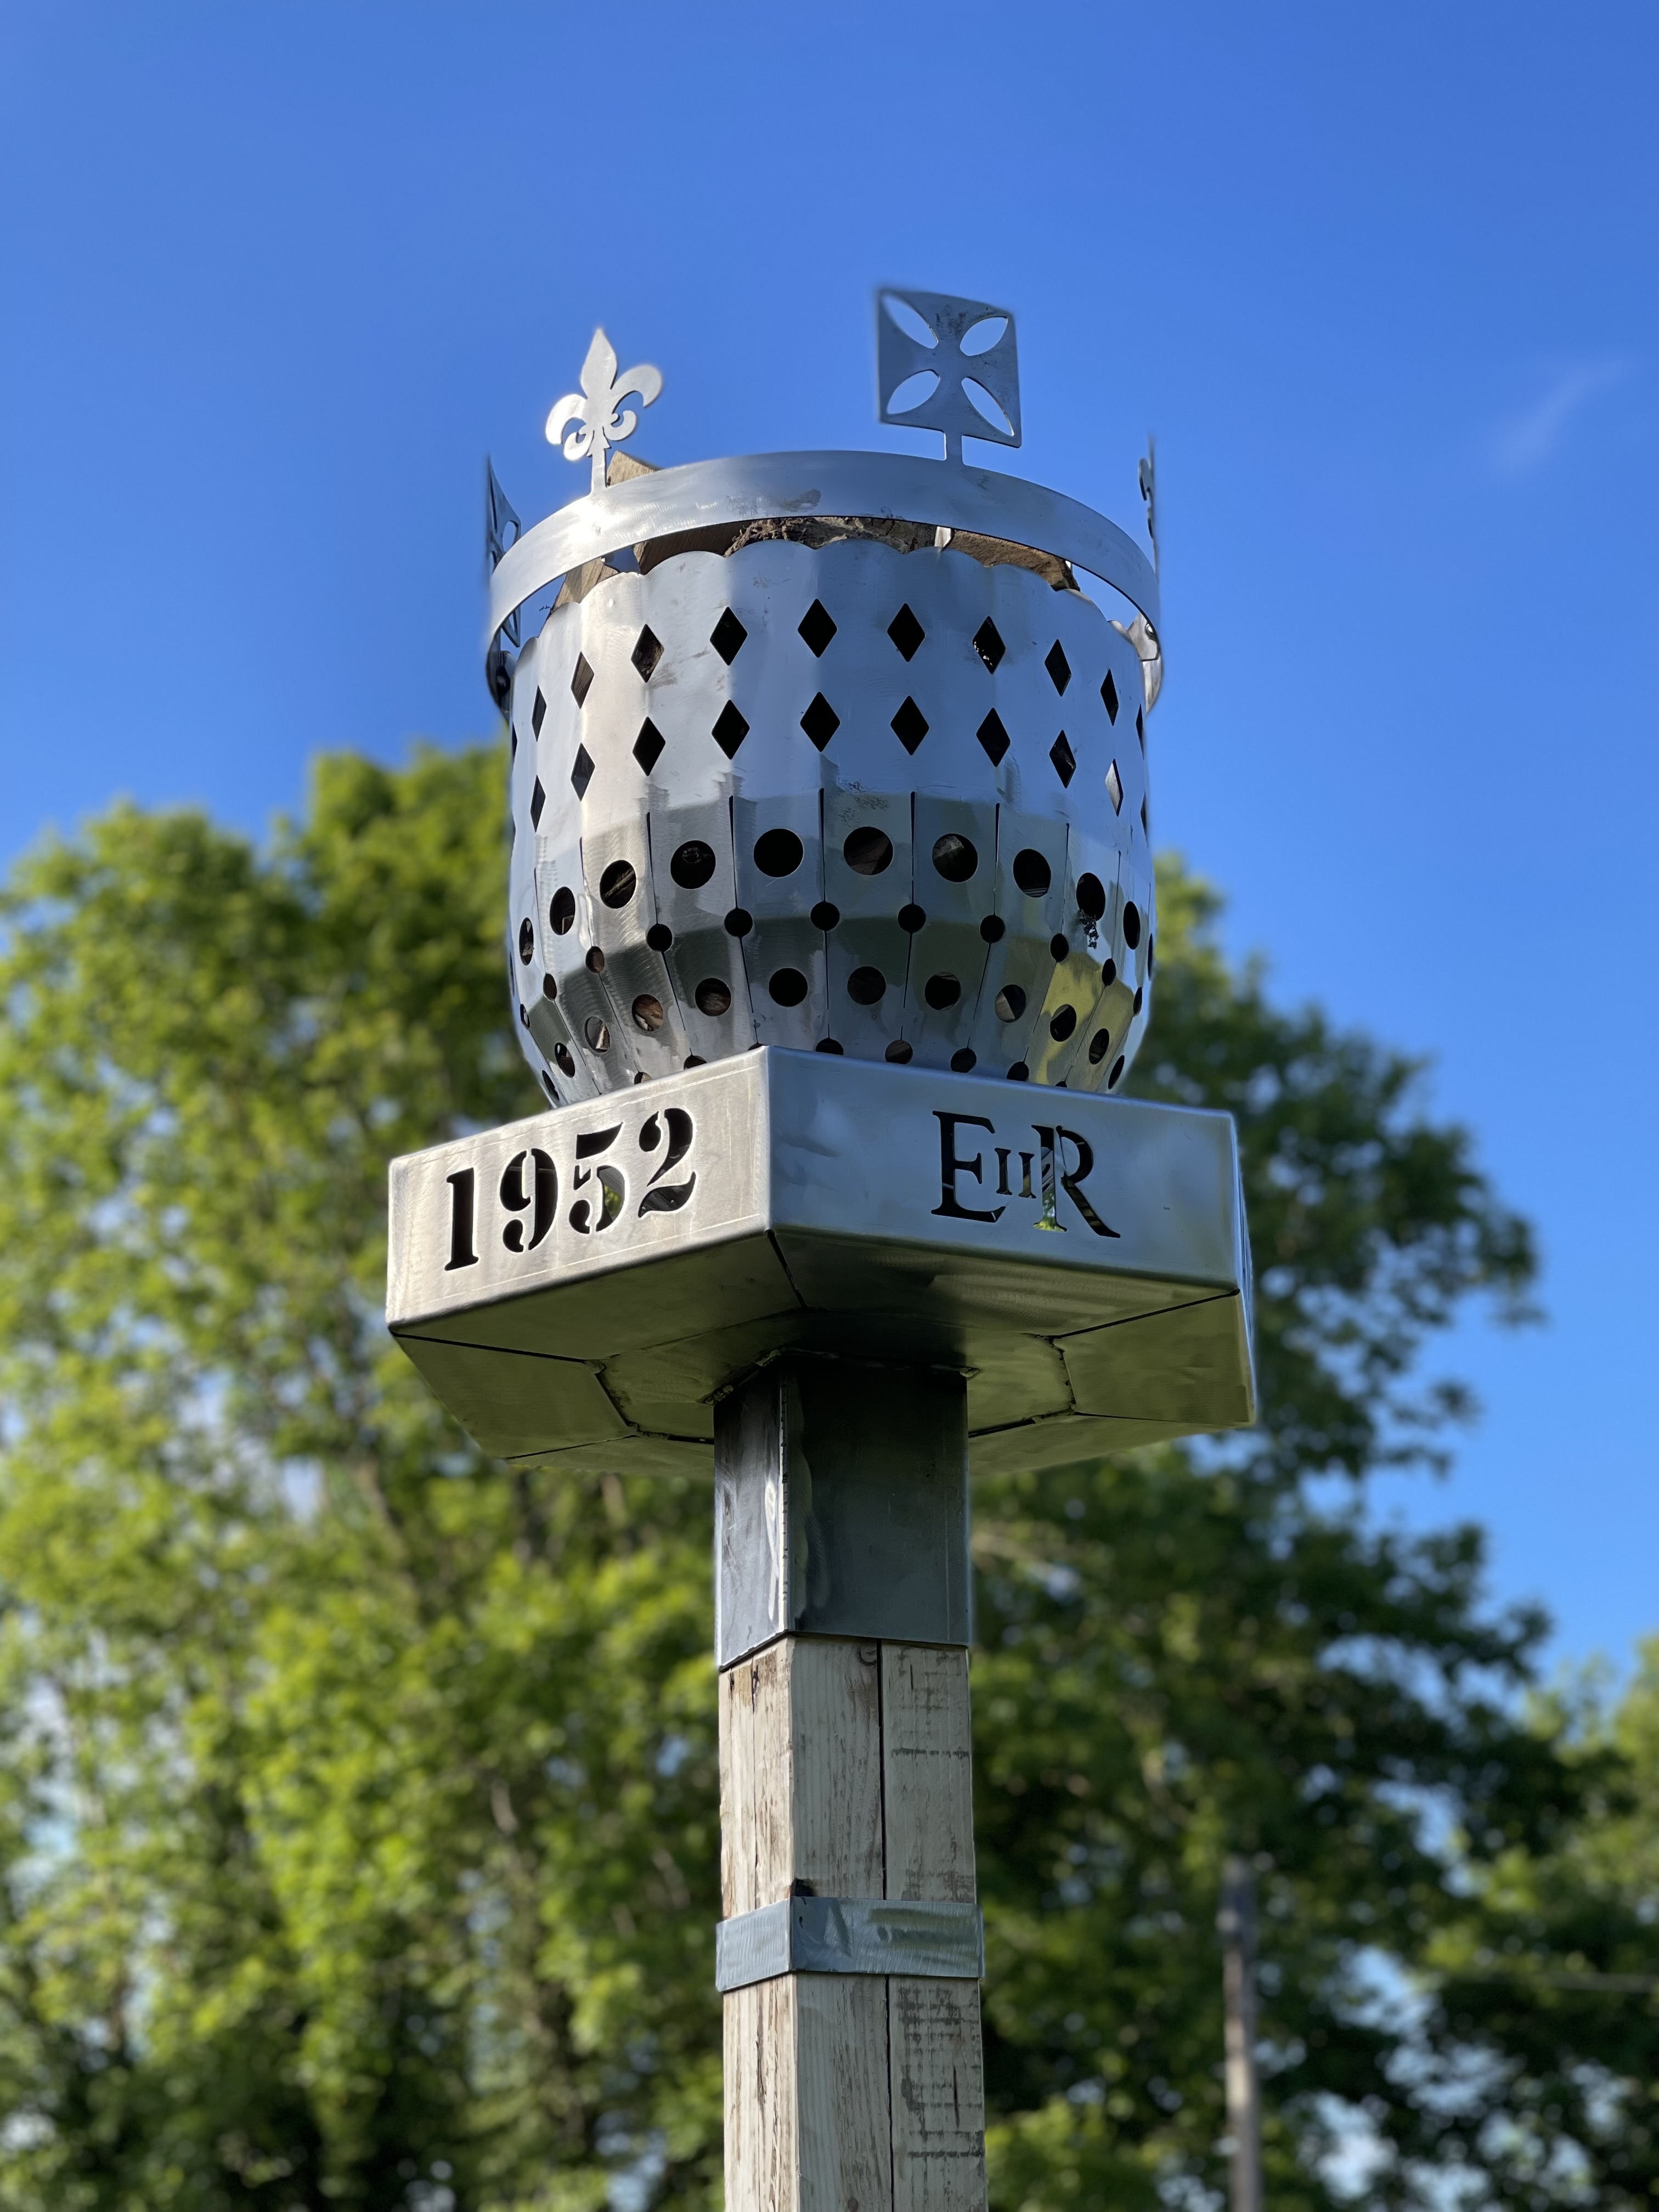 Queen Elizabeth II Platinum Jubilee Beacon, unlit on Plaistow village green. June 2022